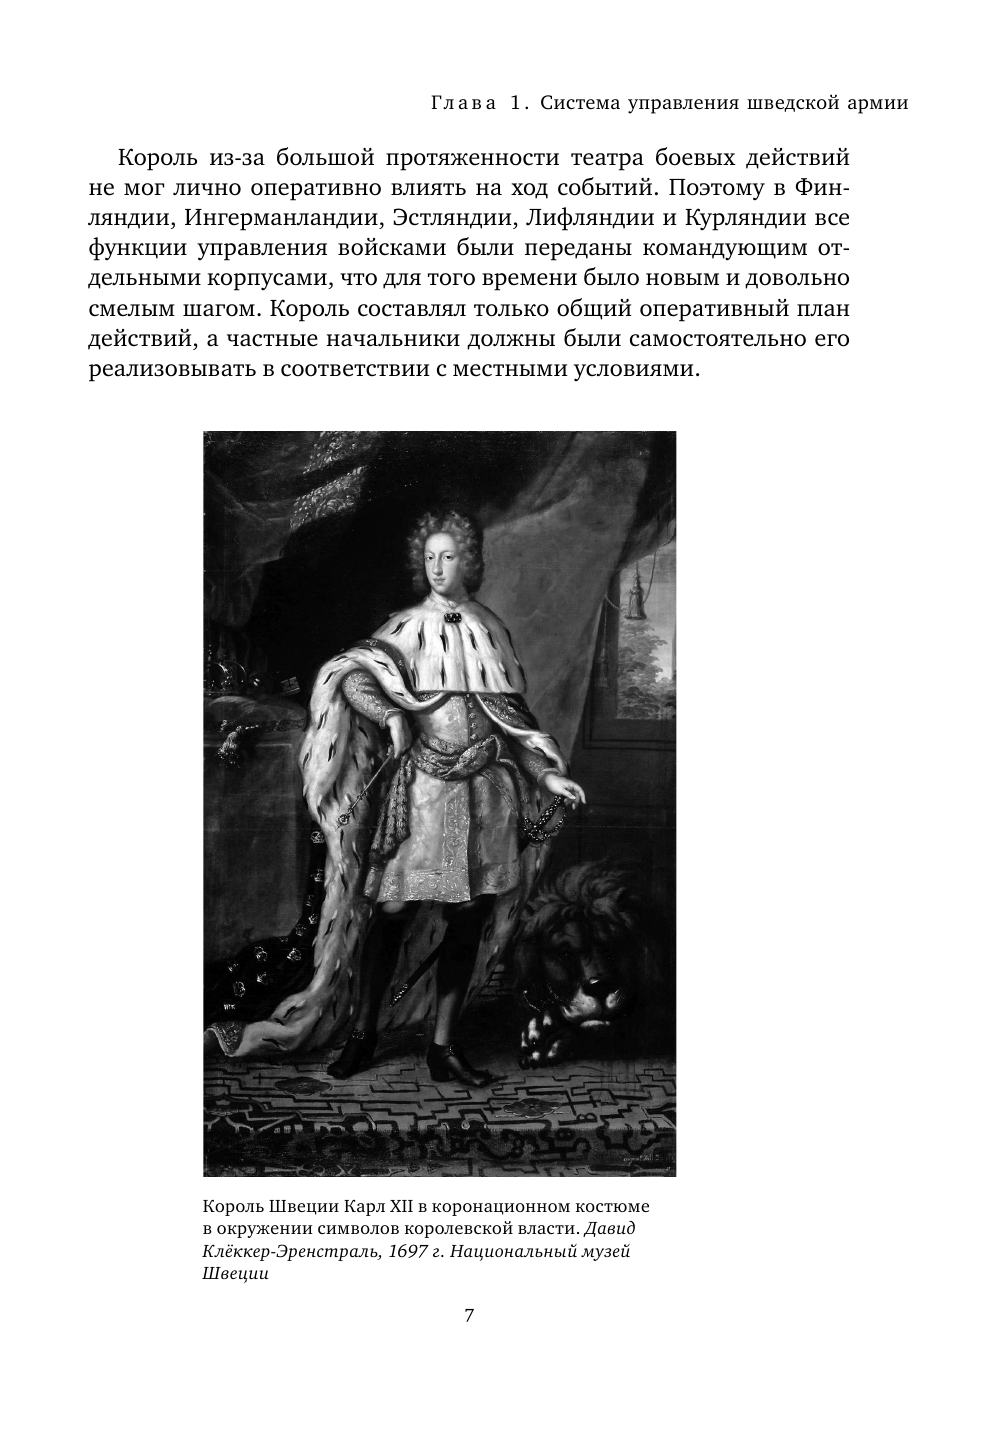 Армия Карла XII. Золотой век шведской армии - фото №10